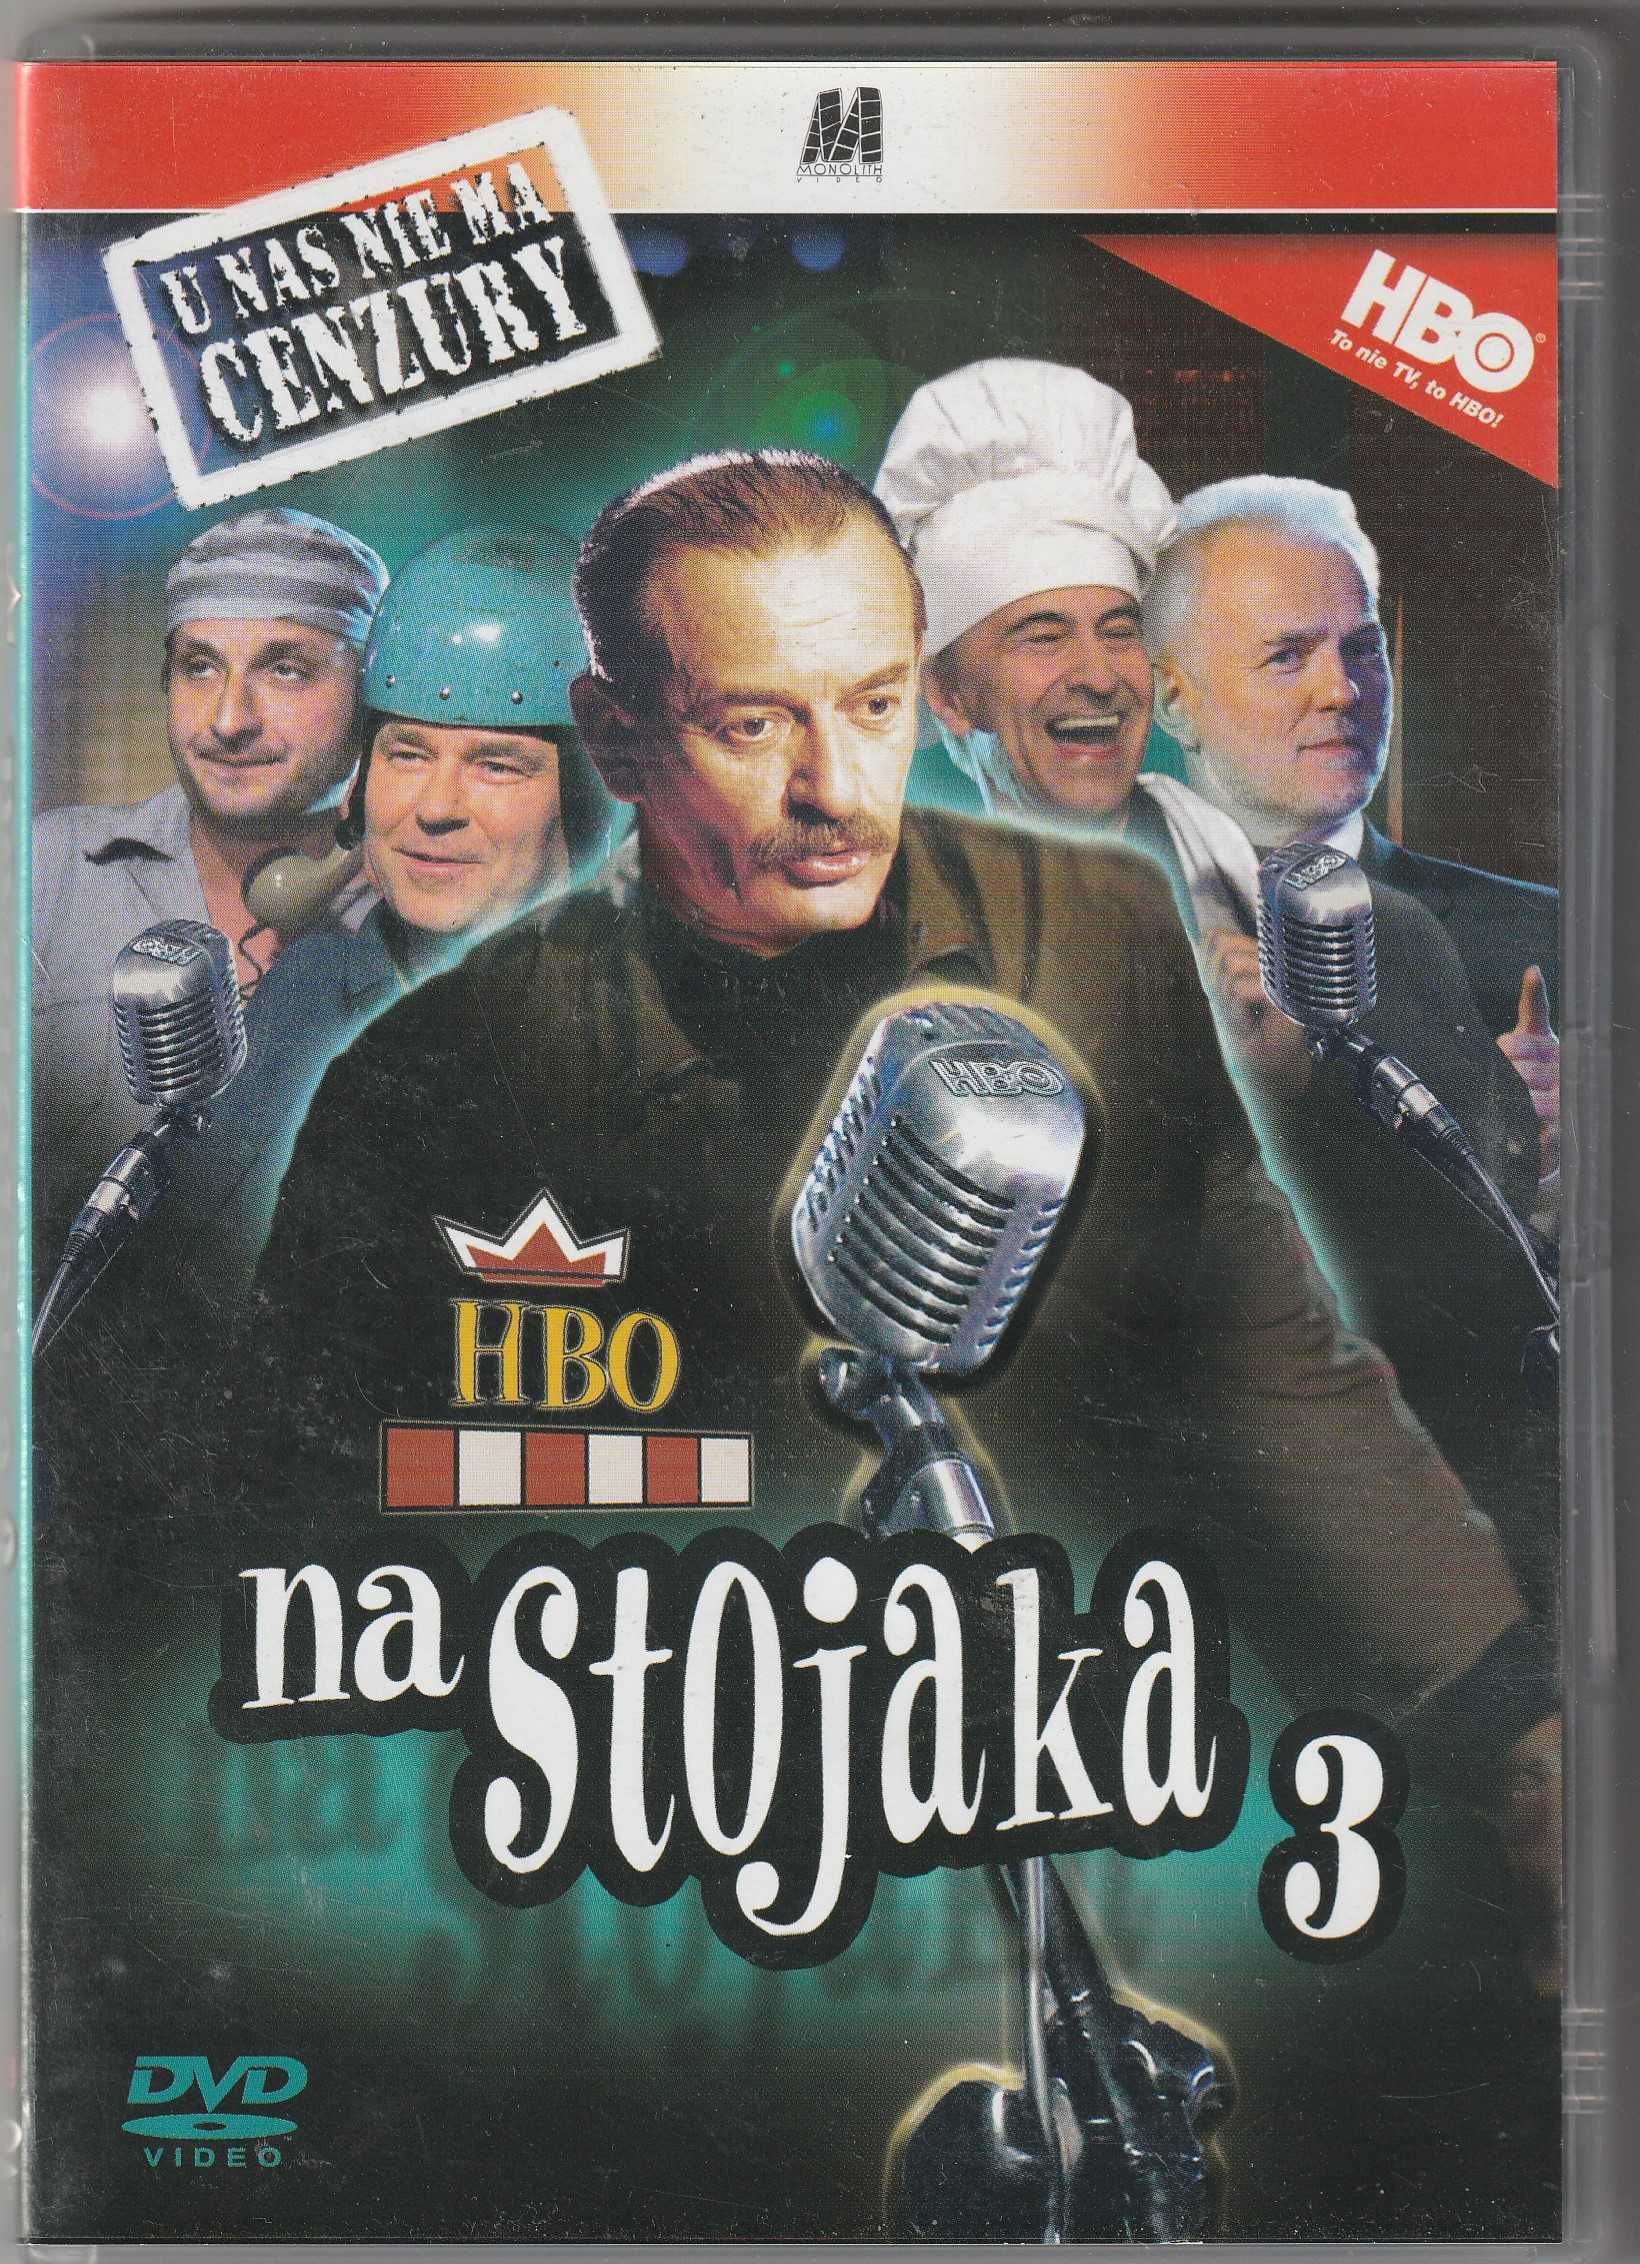 HBO Na stojaka 3 Daniec Górski Halama DVD